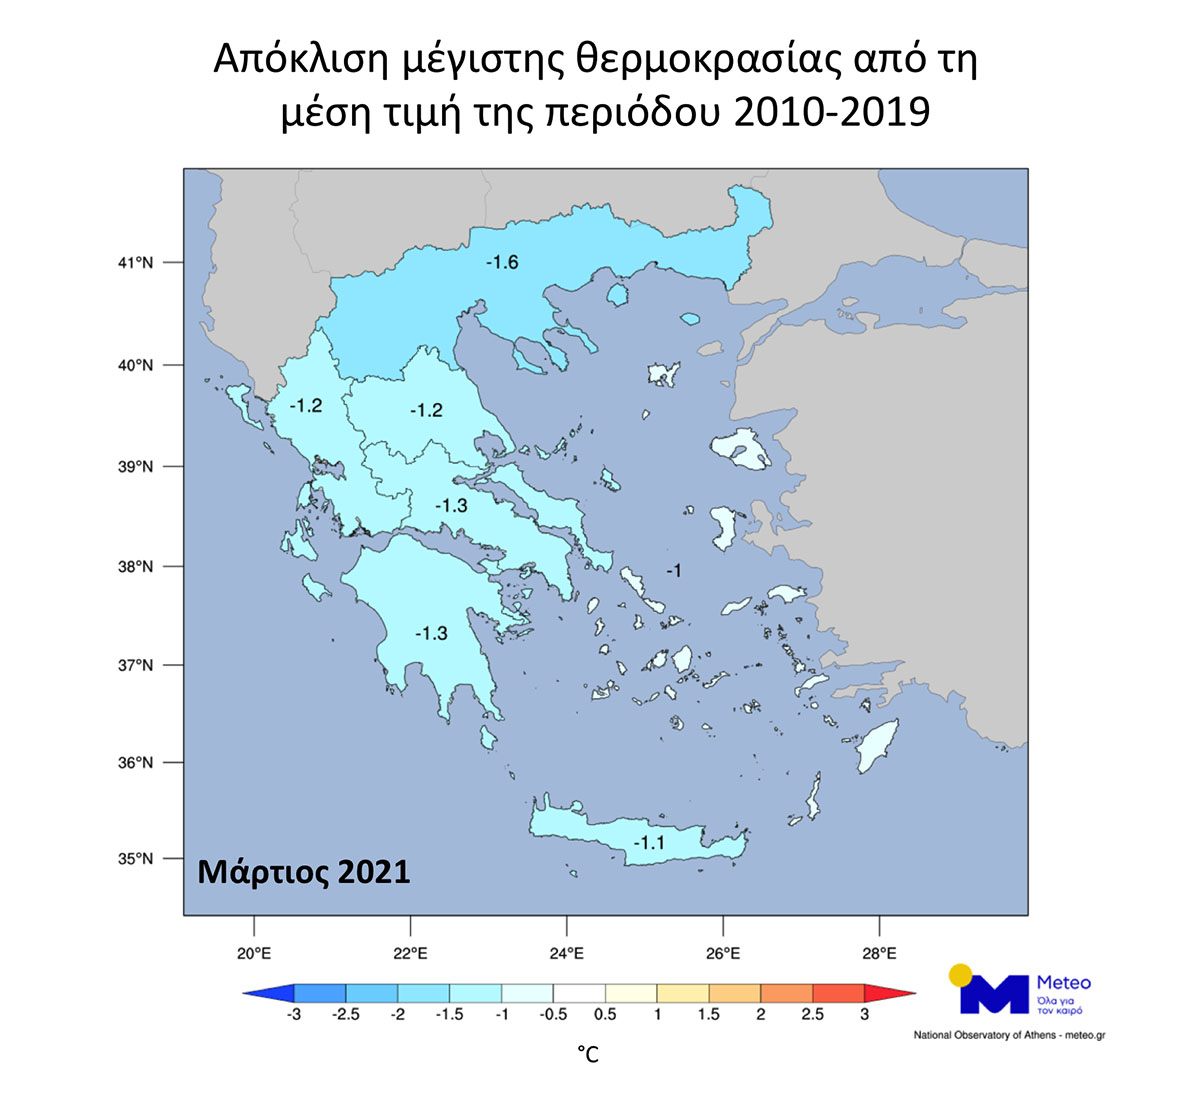 Μάρτης γδάρτης: Ο φετινός Μάρτιος ήταν από τους πιο κρύους των τελευταίων ετών στην Ελλάδα